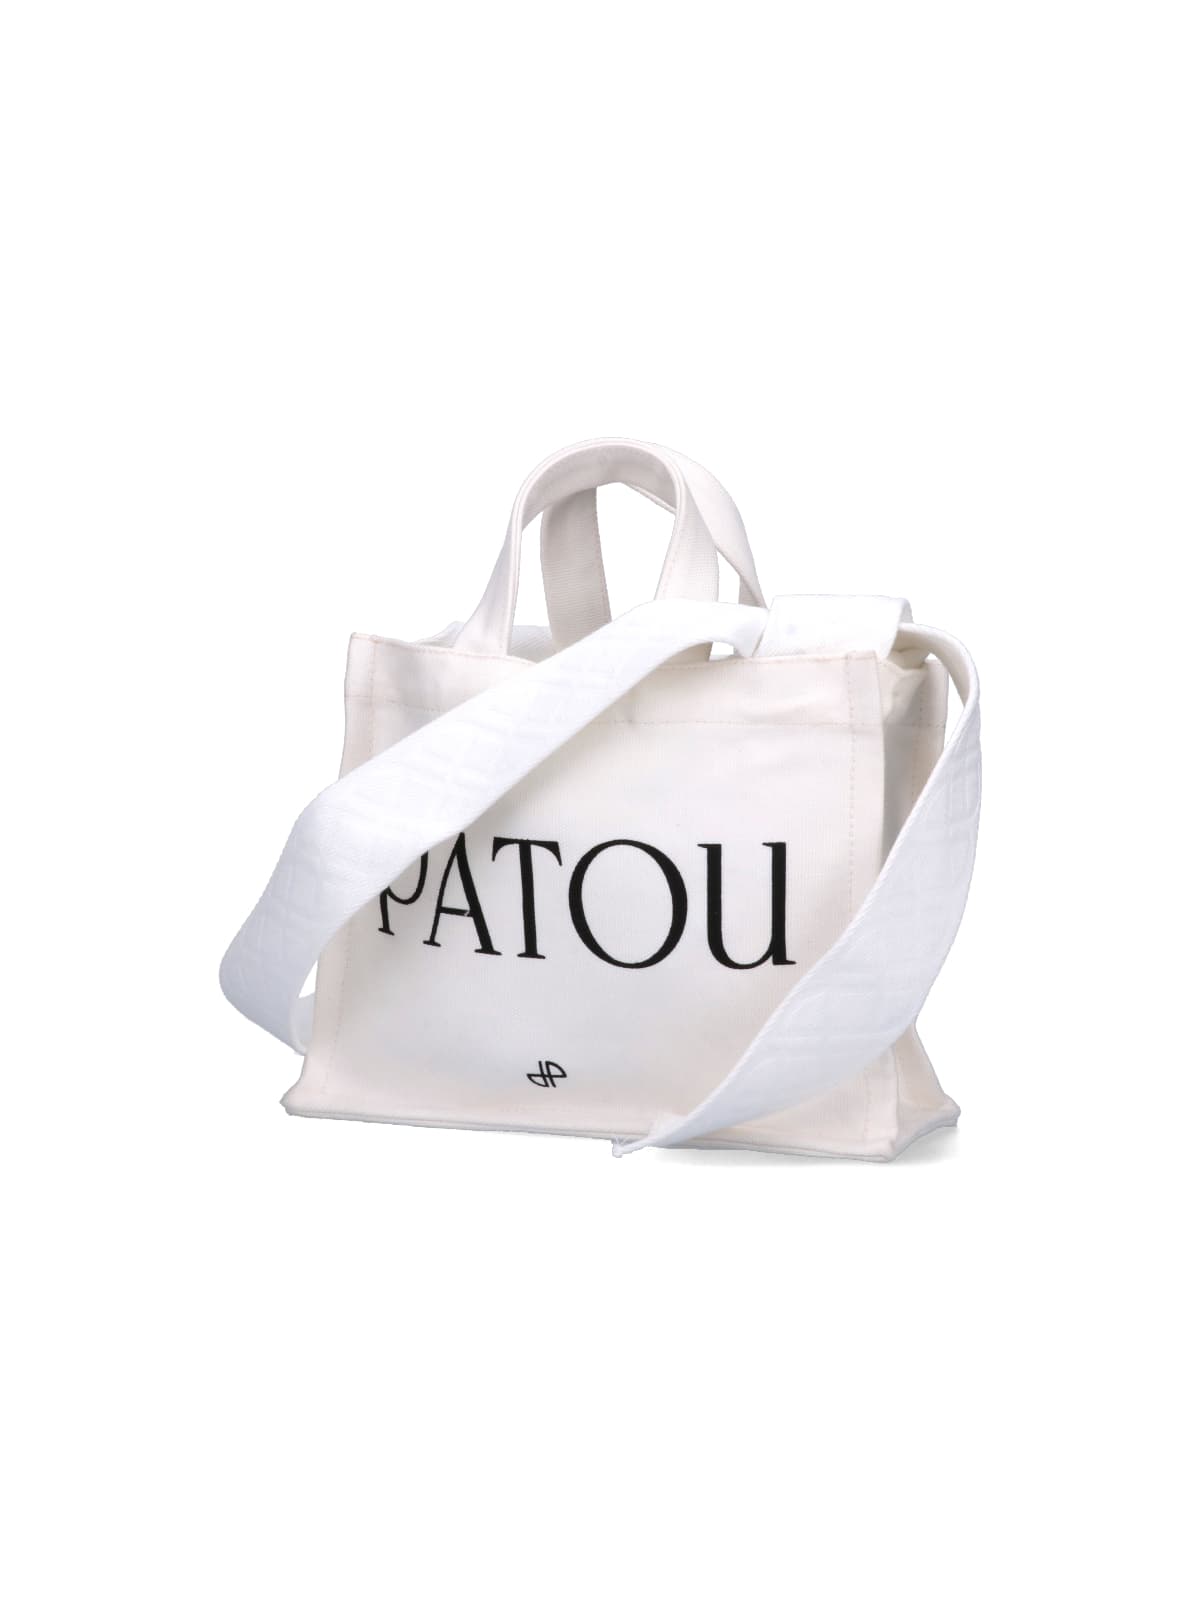 Shop Patou Tote In White